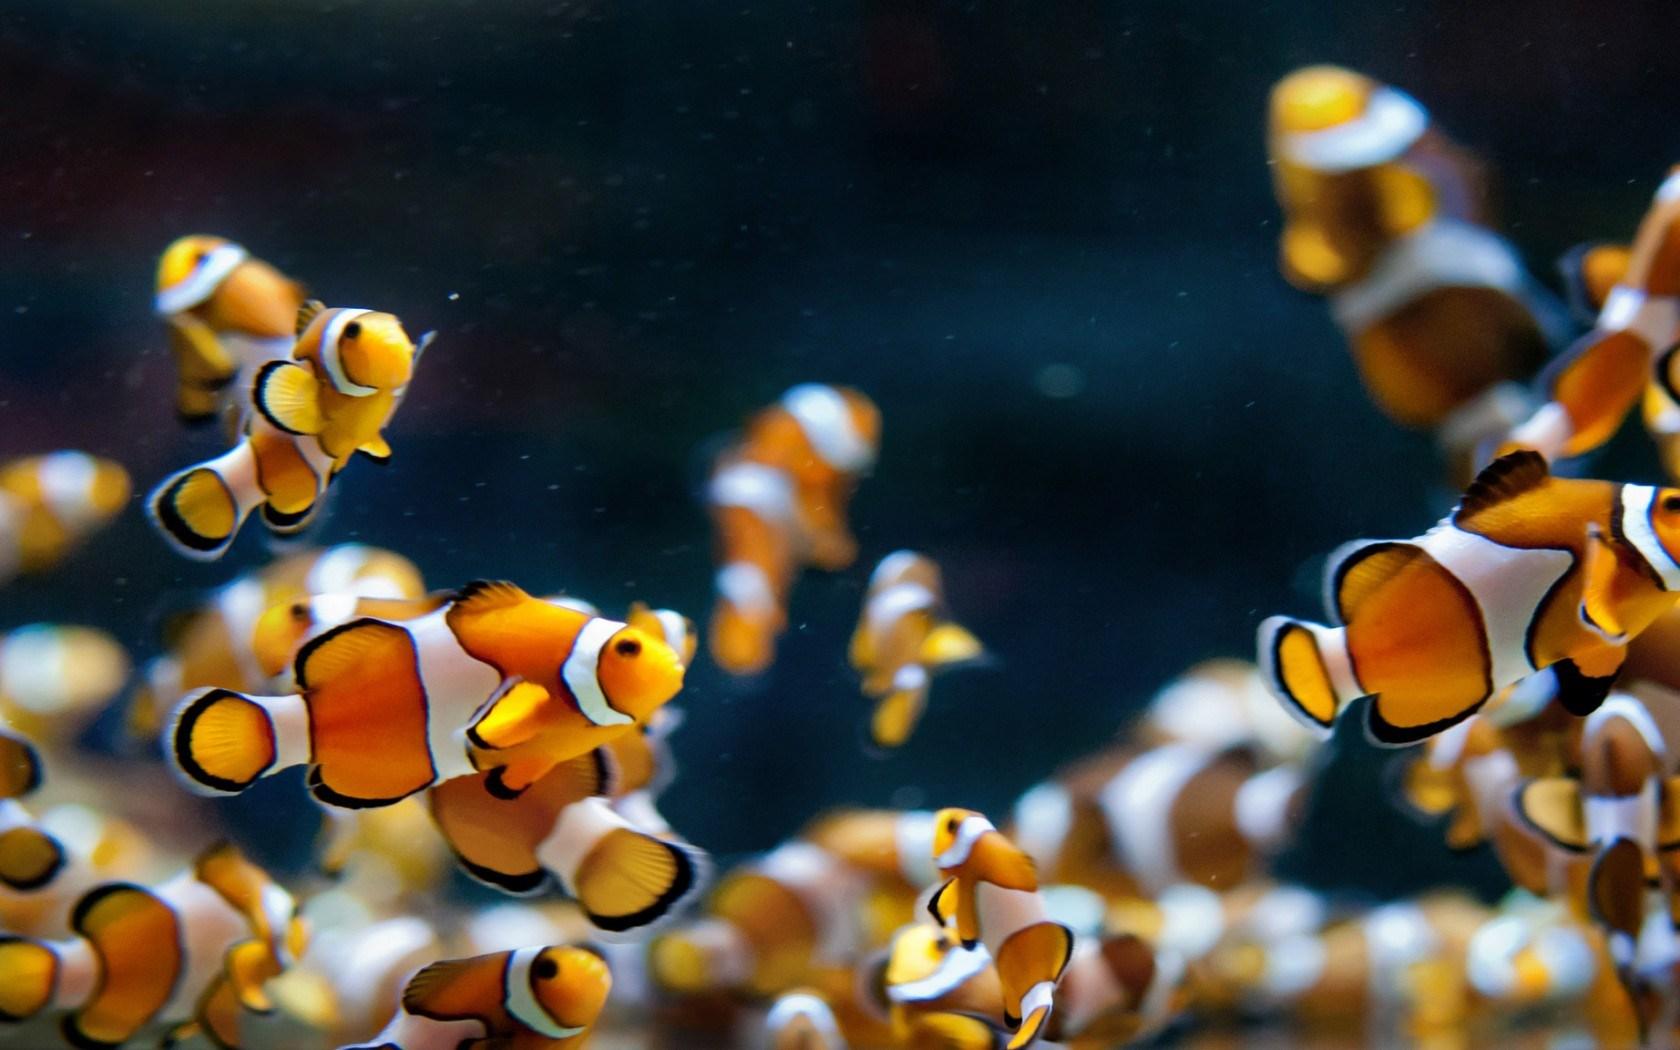 Hd live wallpaper fish aquarium dowload